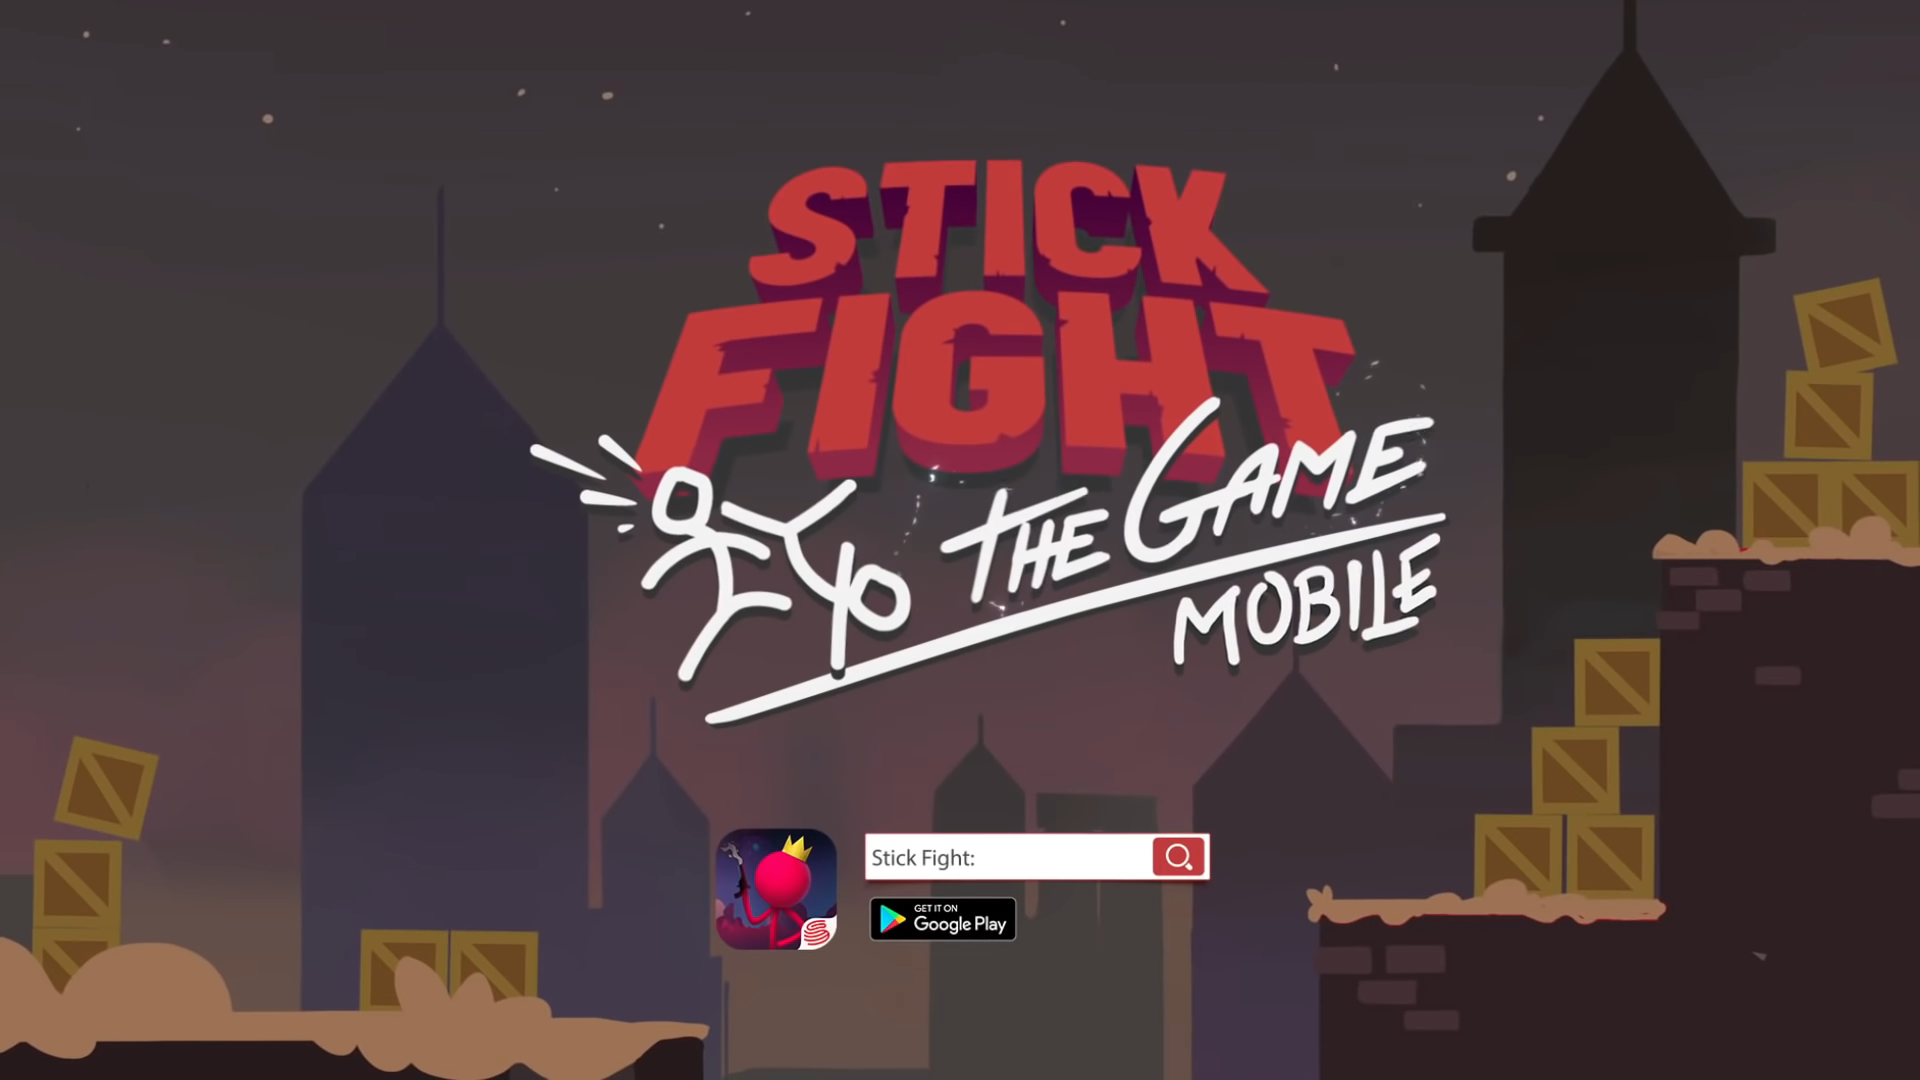 Стик город. Стик файт. Stick Fight: the game. Stickfightthegame. Stick Fight: the game mobile.